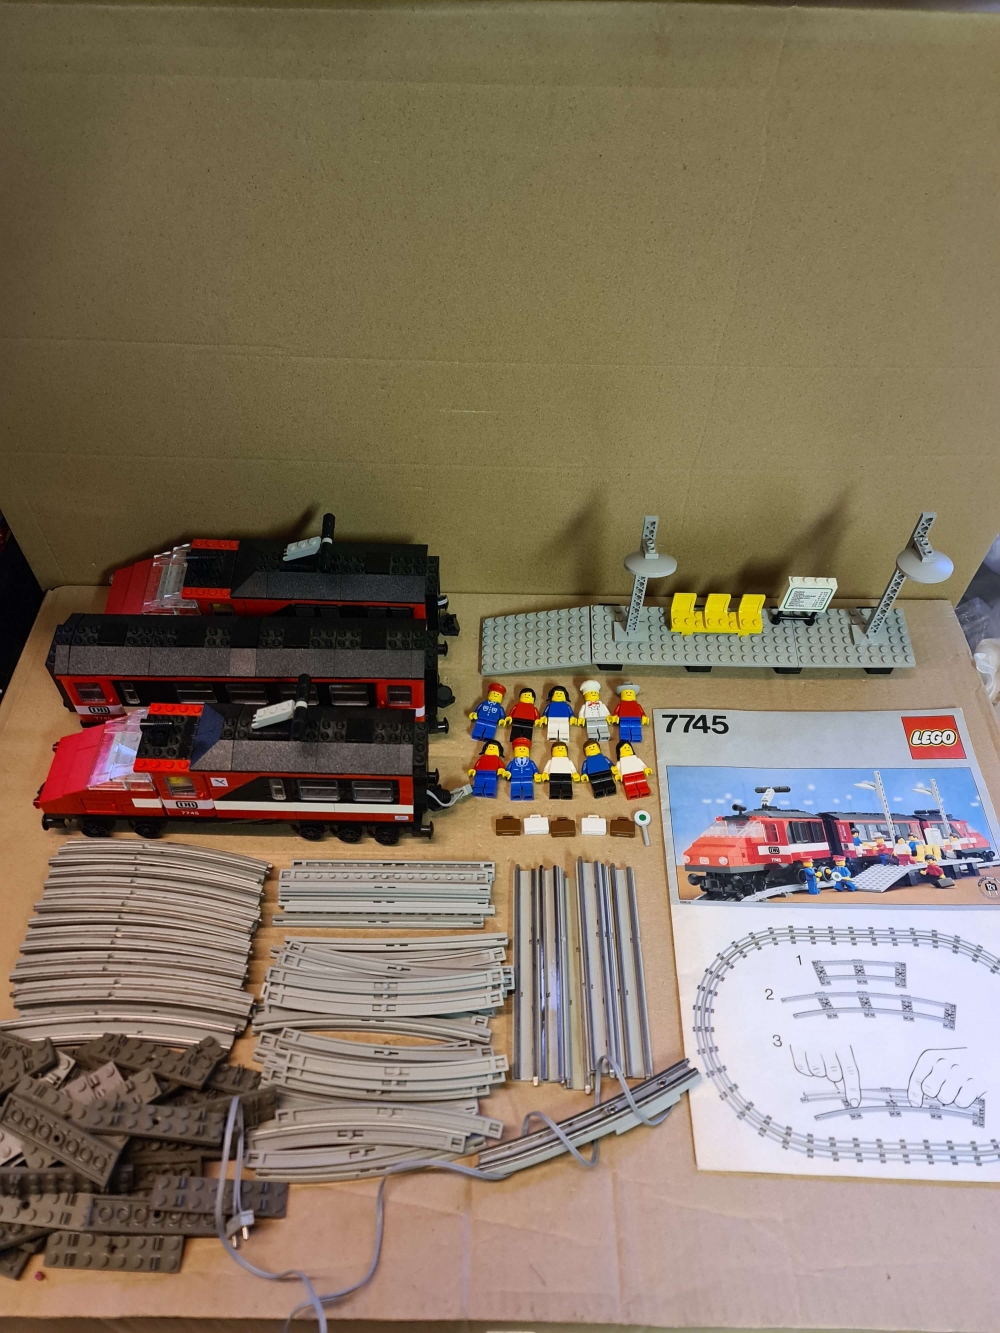 Sett 7745 fra Lego Train : 12V serien.
Komplett med manual.
Meget pent sett.